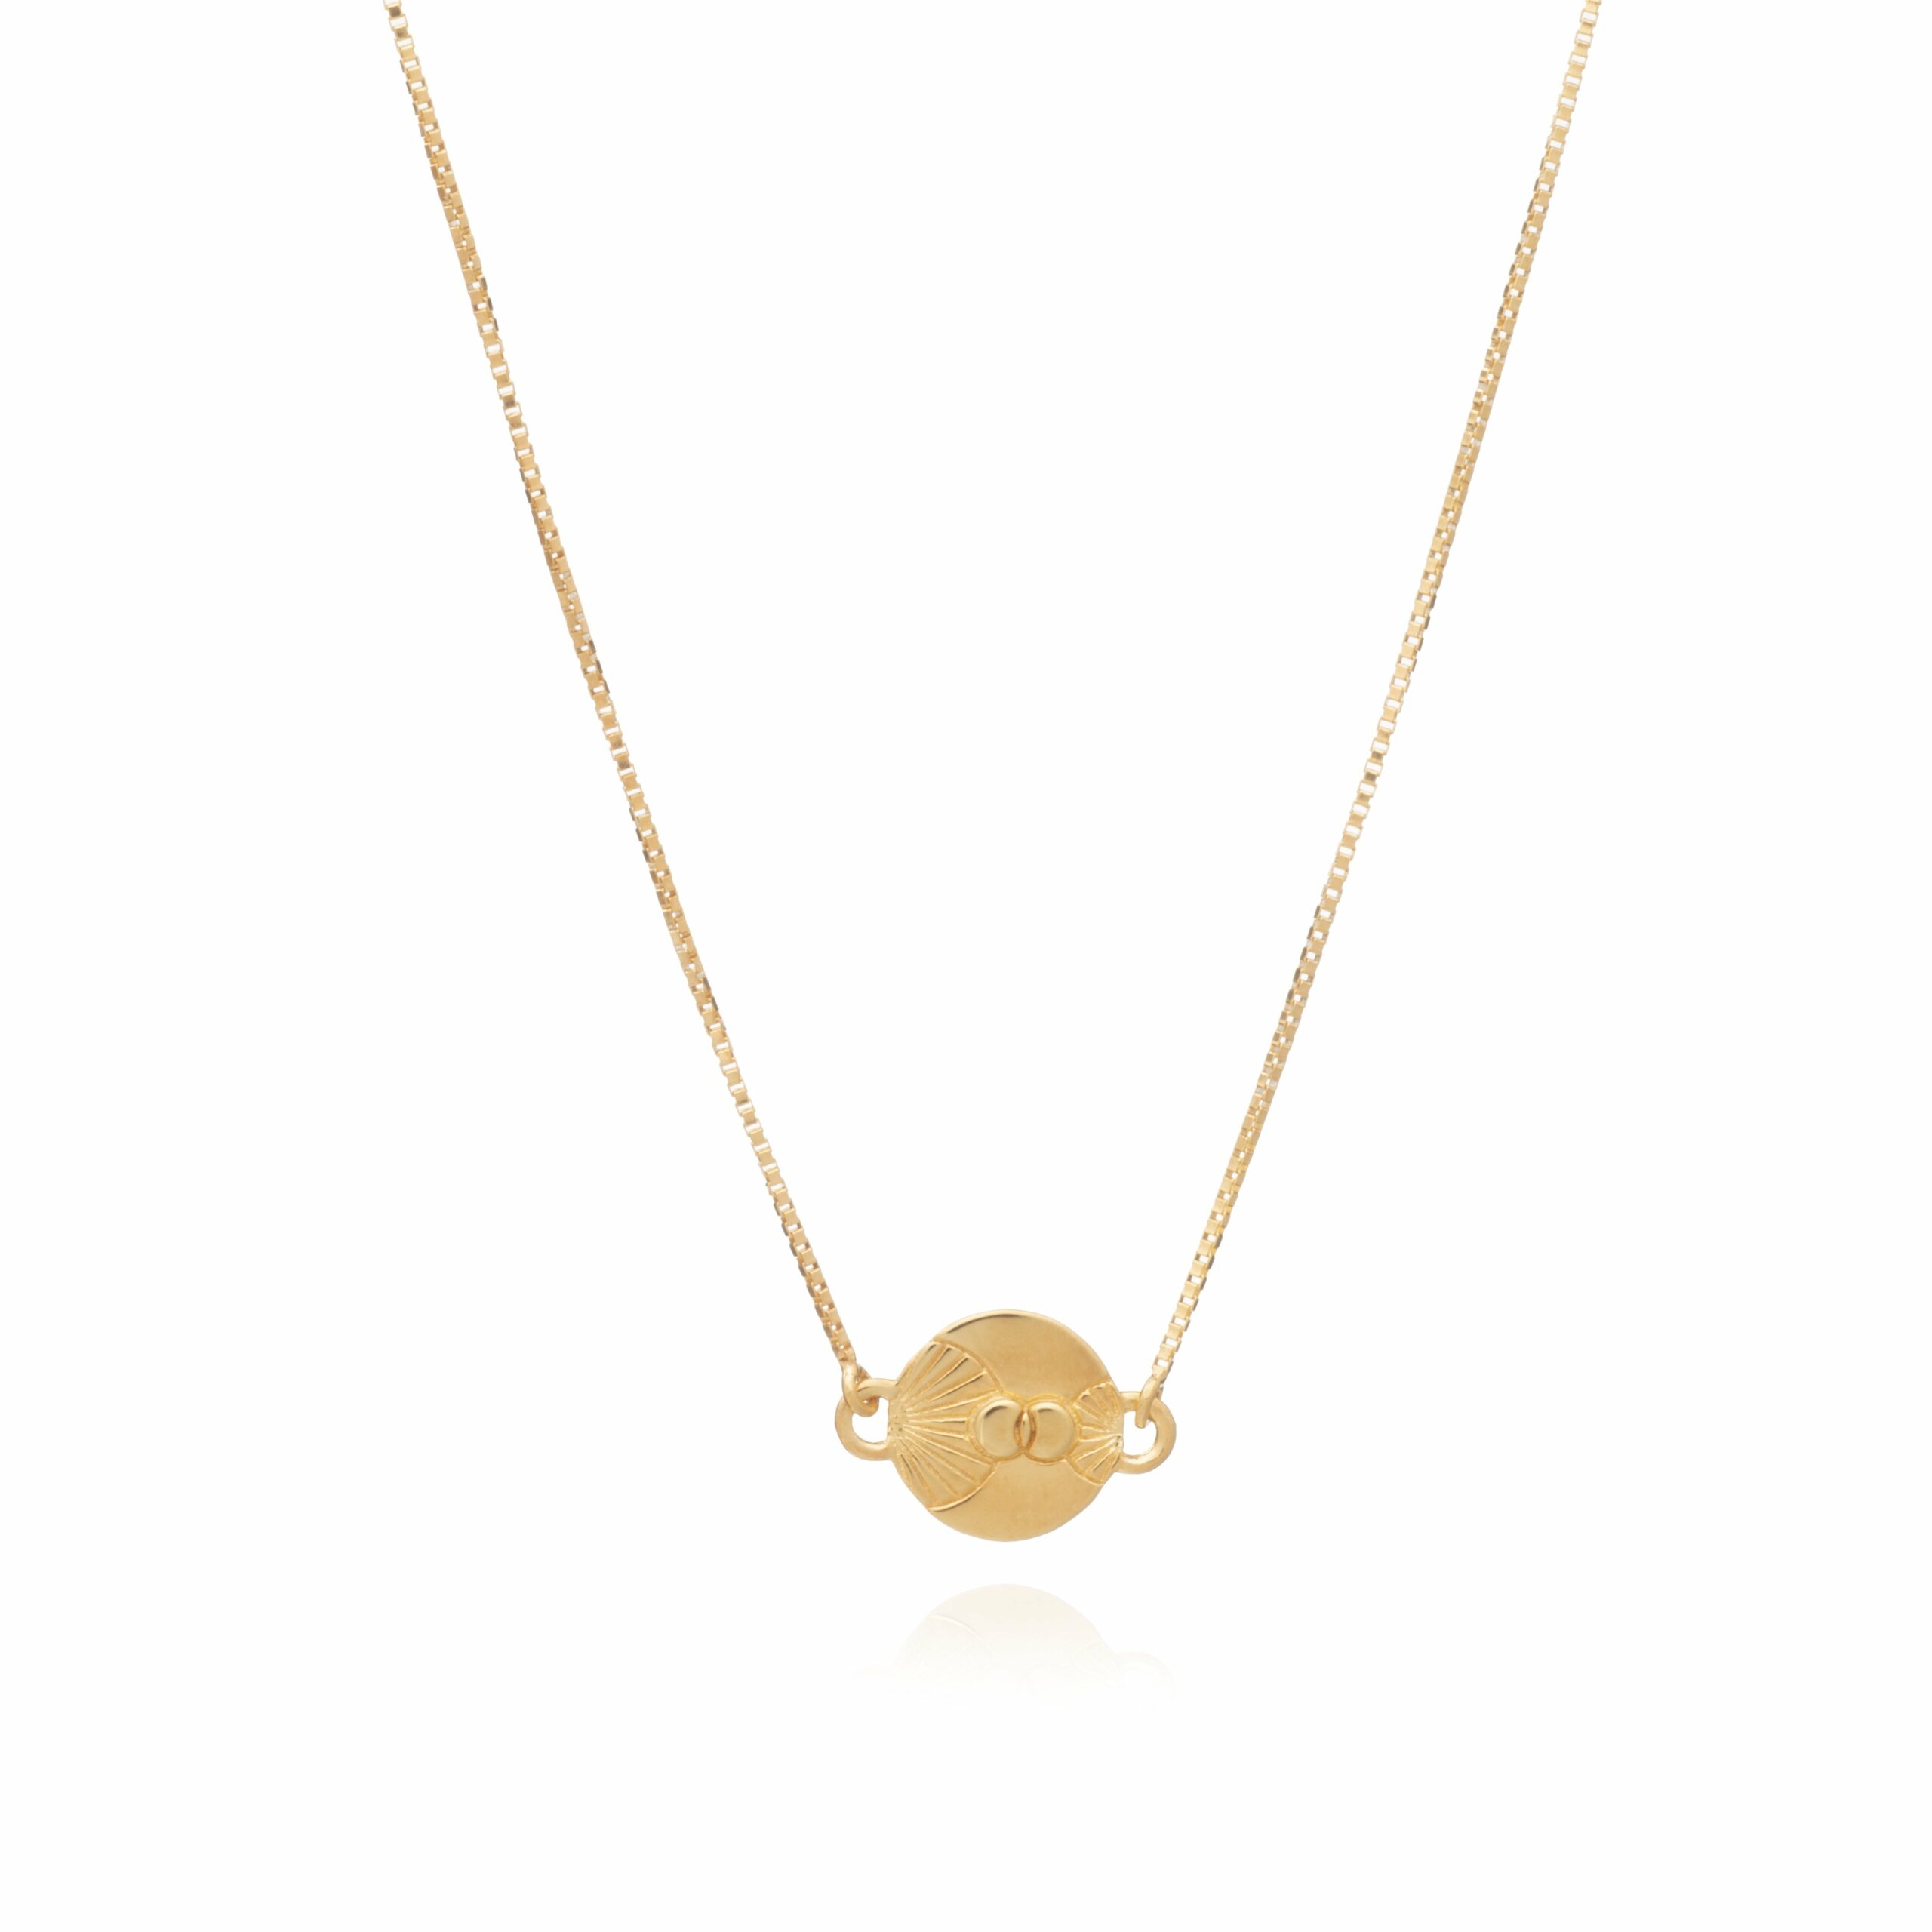 Rachel Jackson Luminary Art Coin Choker Necklace - GOLD